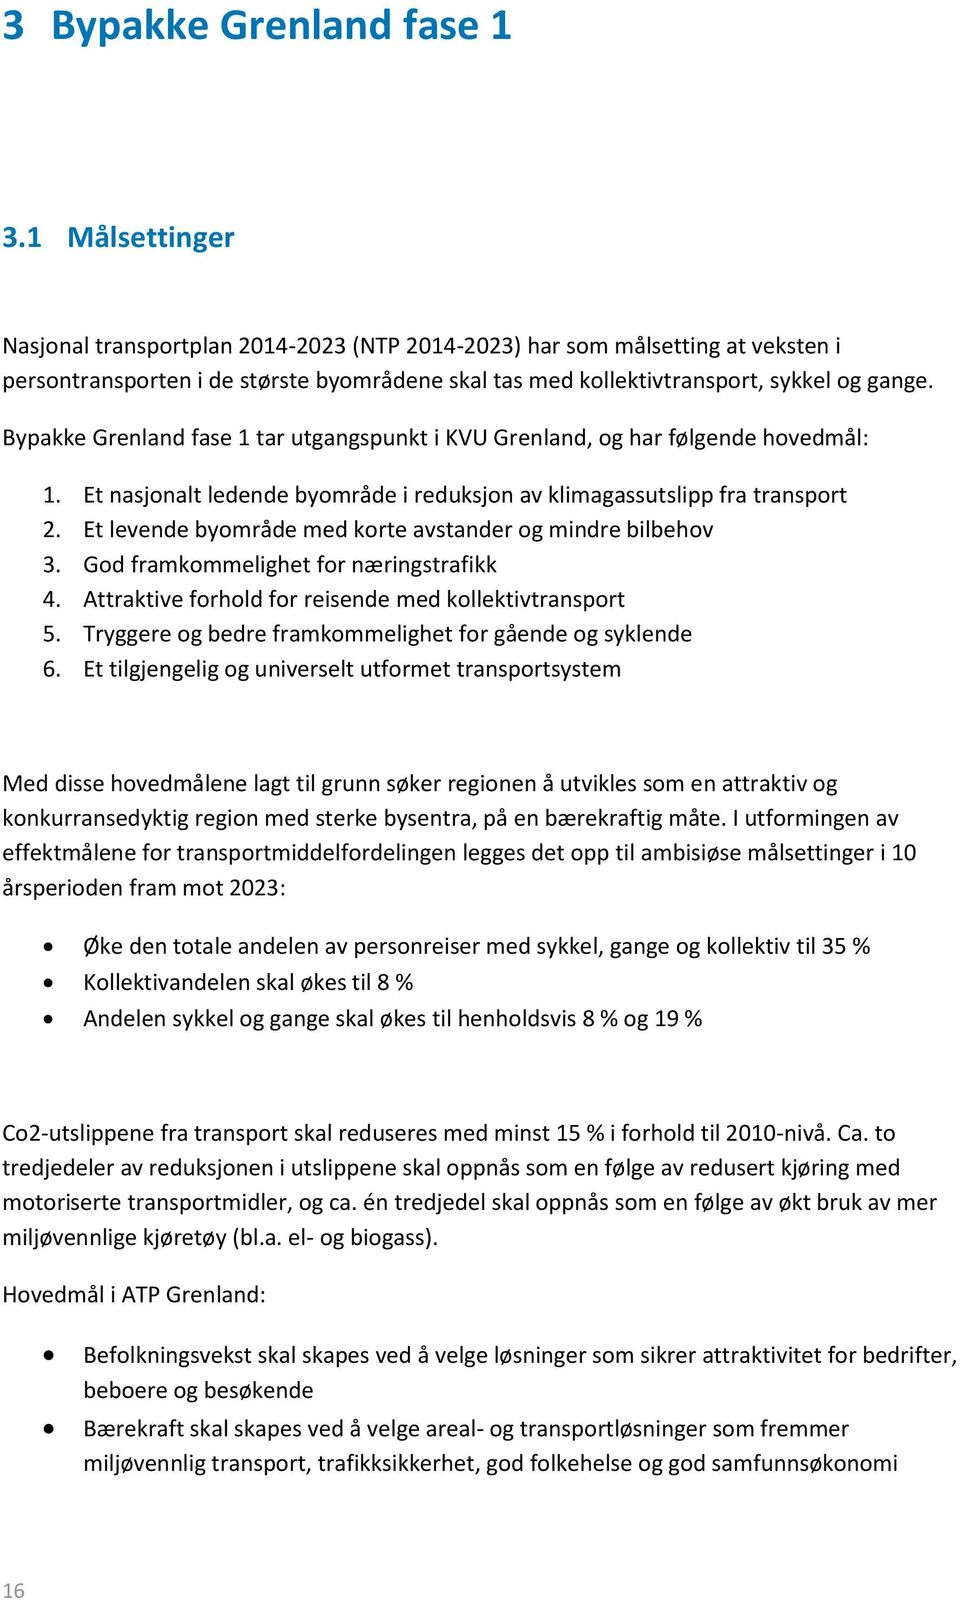 Bypakke Grenland fase 1 tar utgangspunkt i KVU Grenland, og har følgende hovedmål: 1. Et nasjonalt ledende byområde i reduksjon av klimagassutslipp fra transport 2.